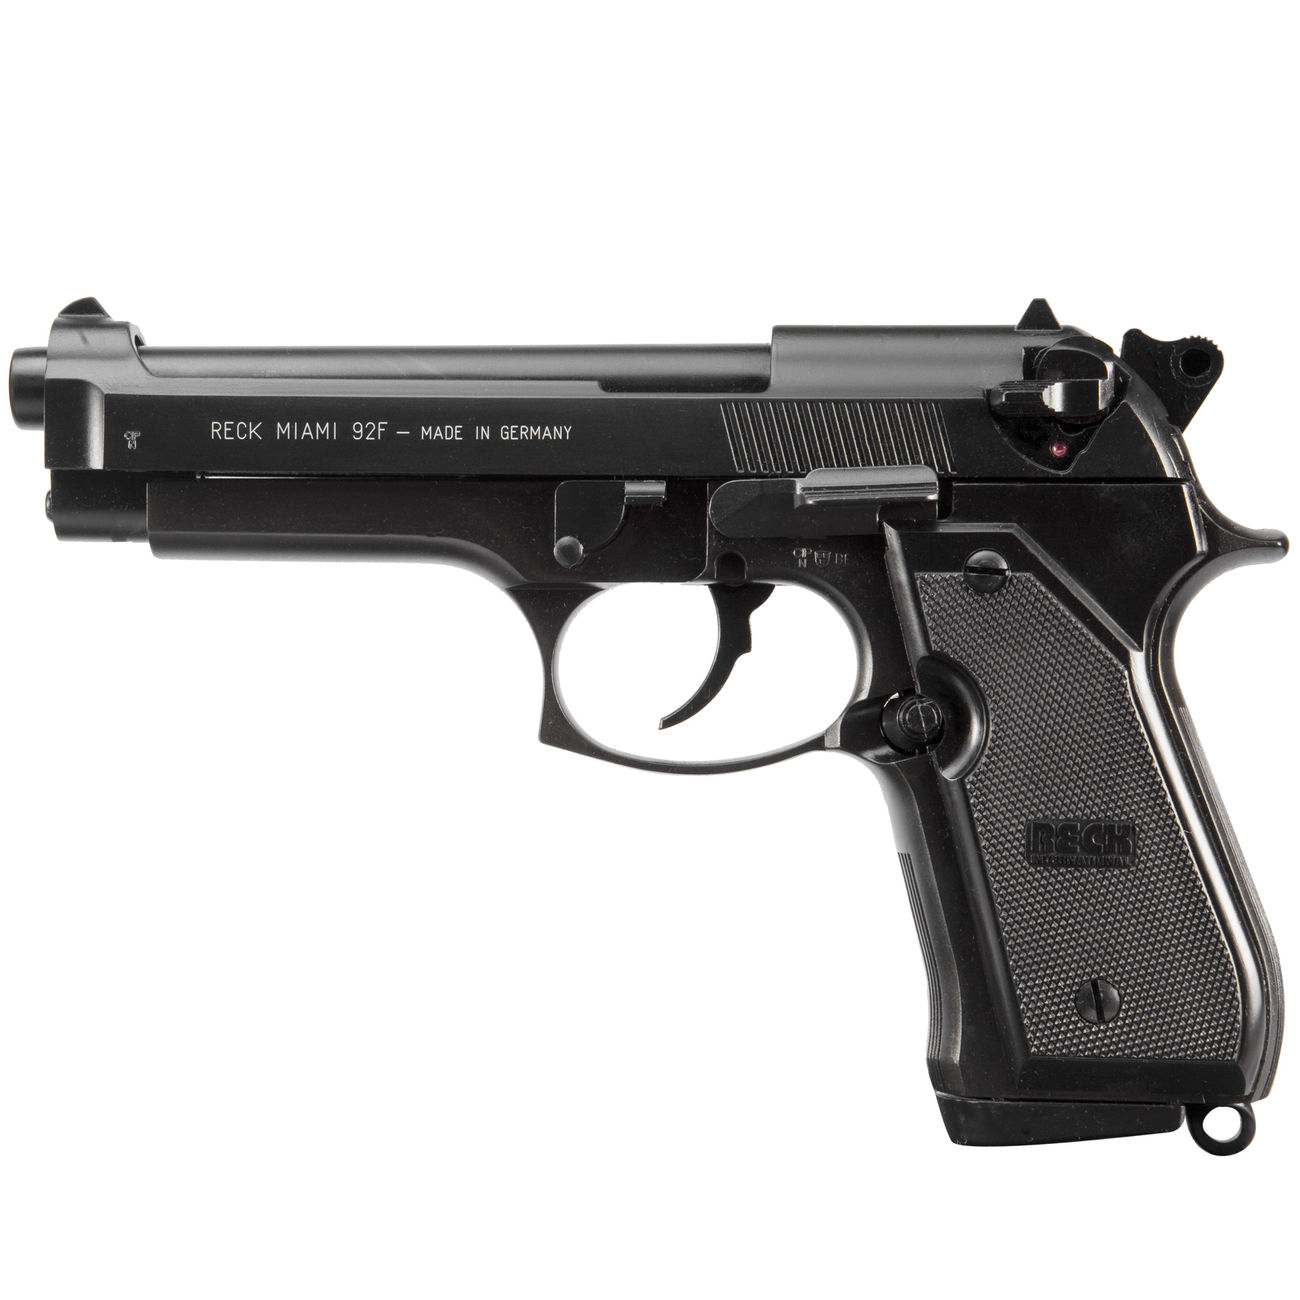 Reck Miami 92 F Schreckschuss Pistole 9mm P.A.K. brüniert günstig kaufen - Kotte & Zeller